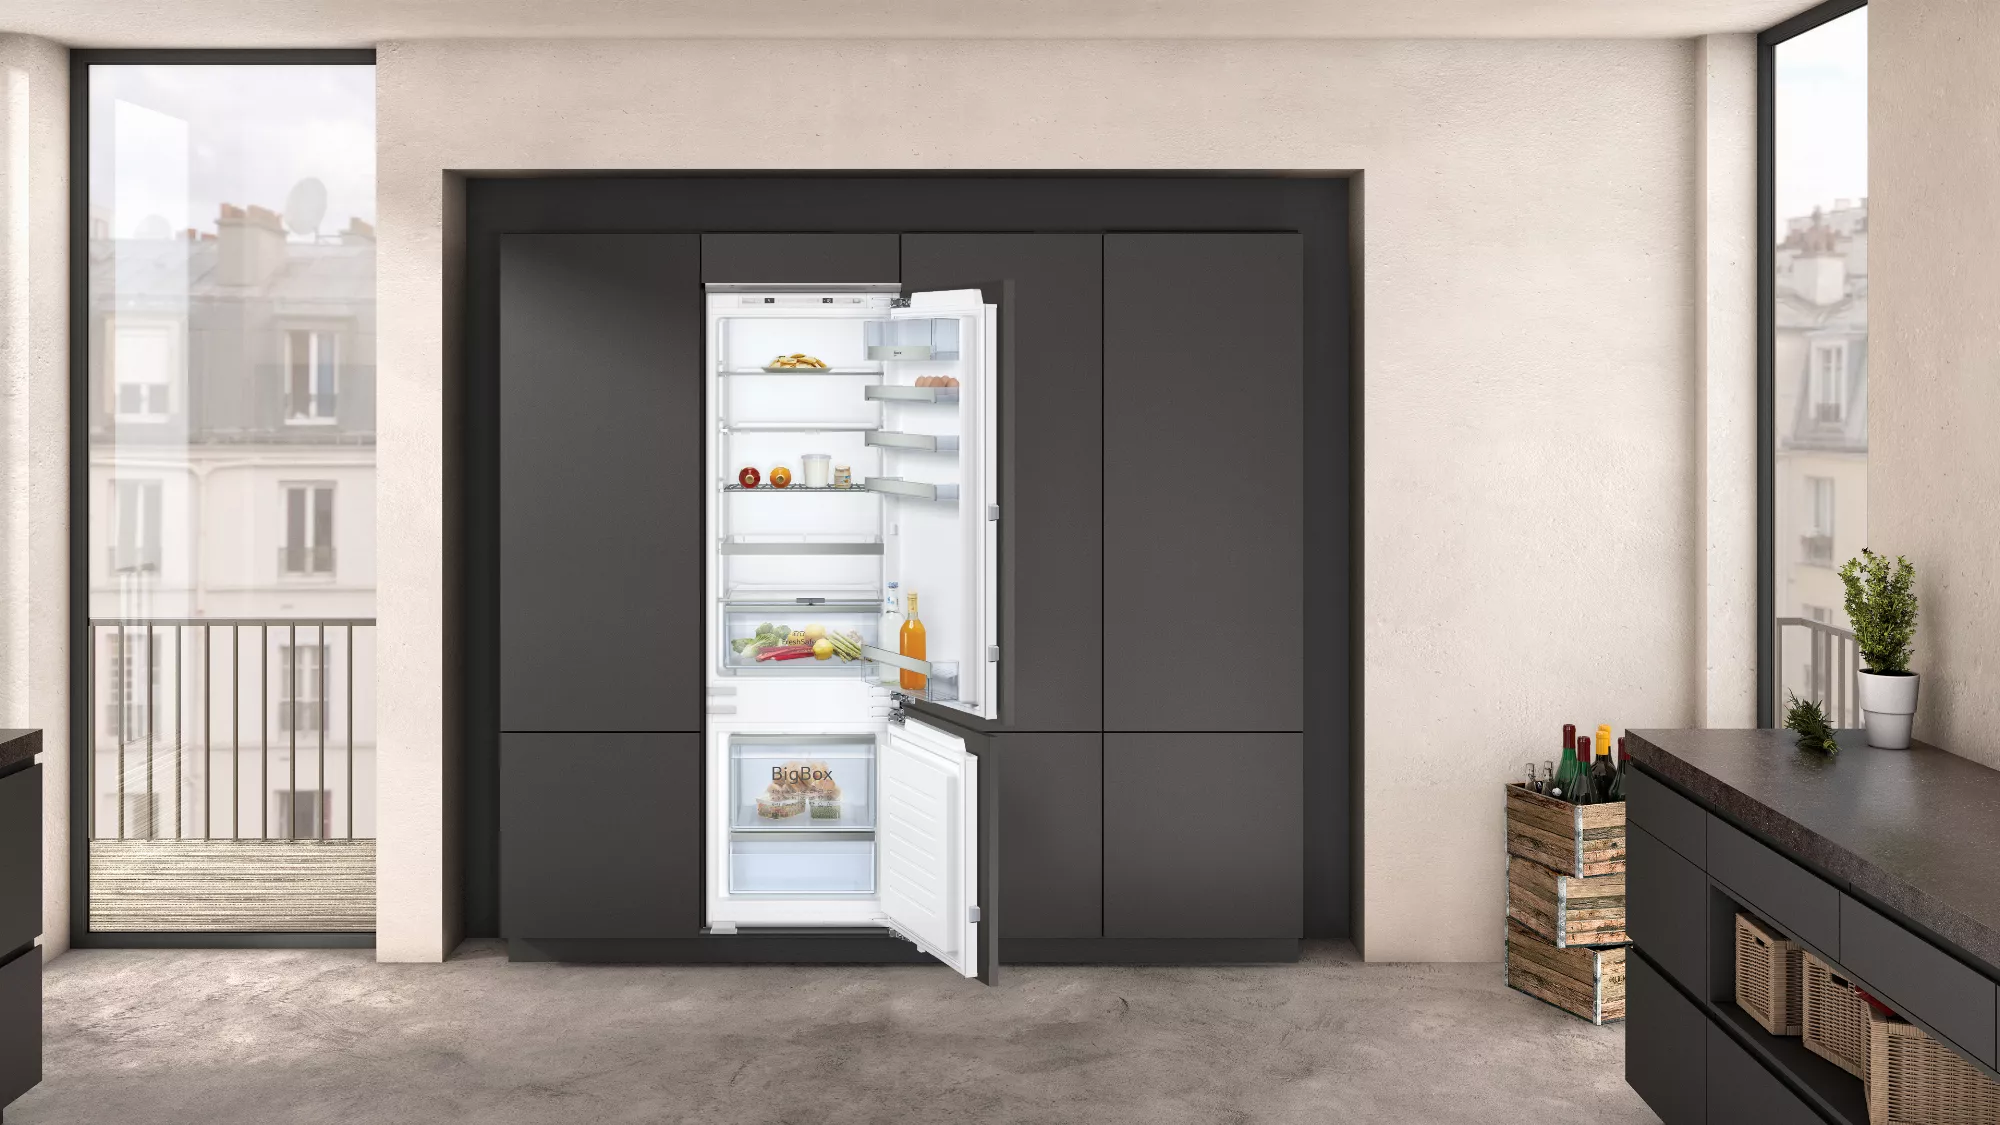 NEFF Einbau Kühlschrank,  KI6873FE0, mit Gefrierfach unten, 177.2 x 55.8 cm, 